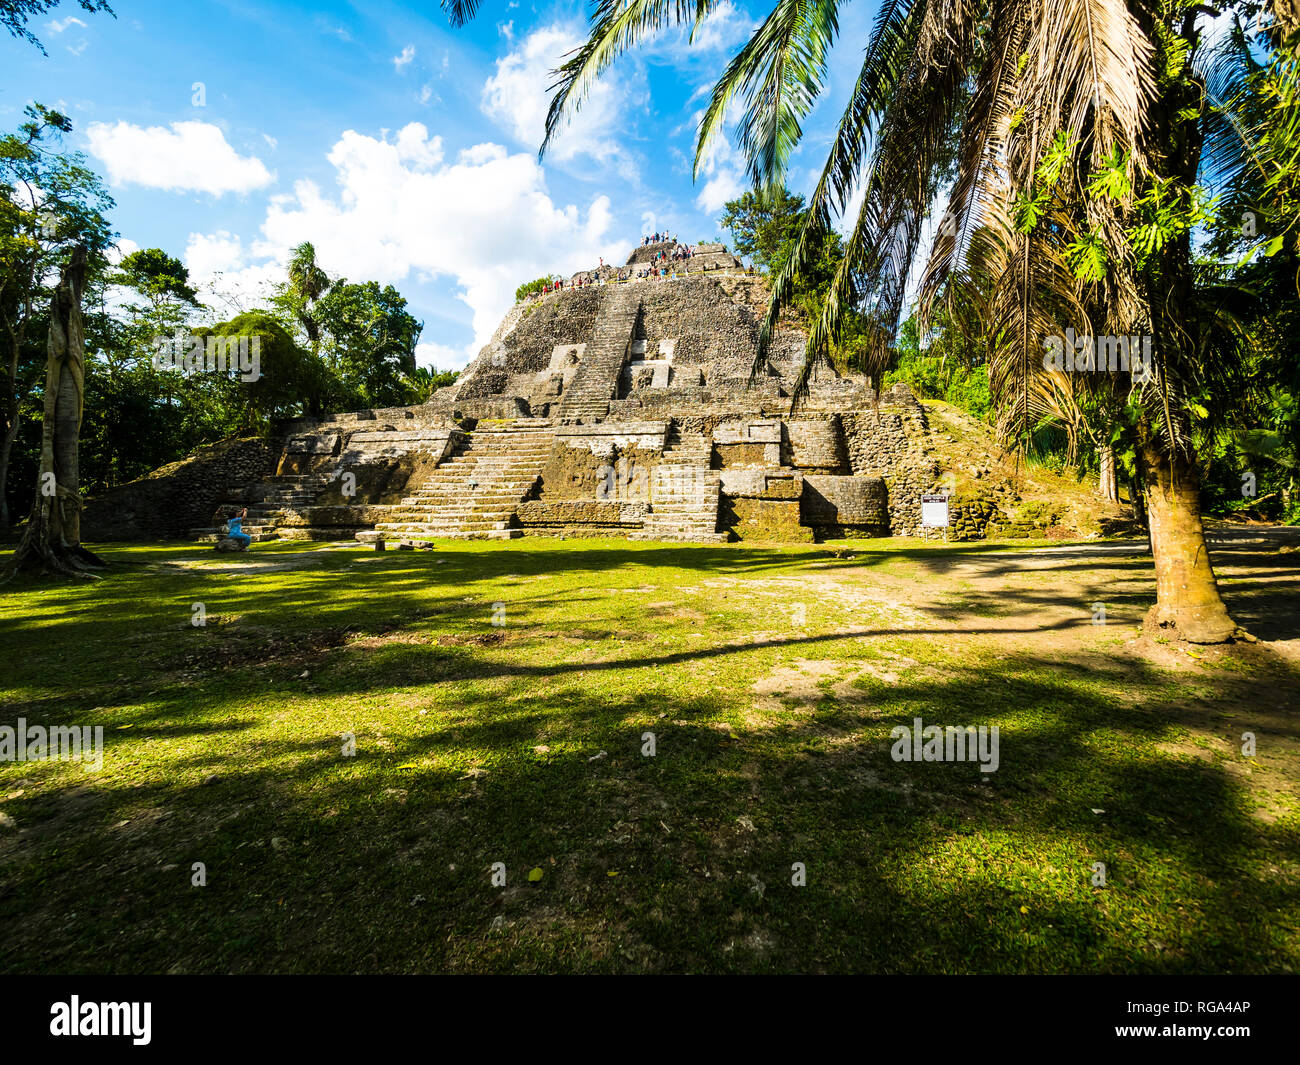 América Central, Belice, la península de Yucatán, New River, Lamanai, ruinas mayas, gran templo Foto de stock